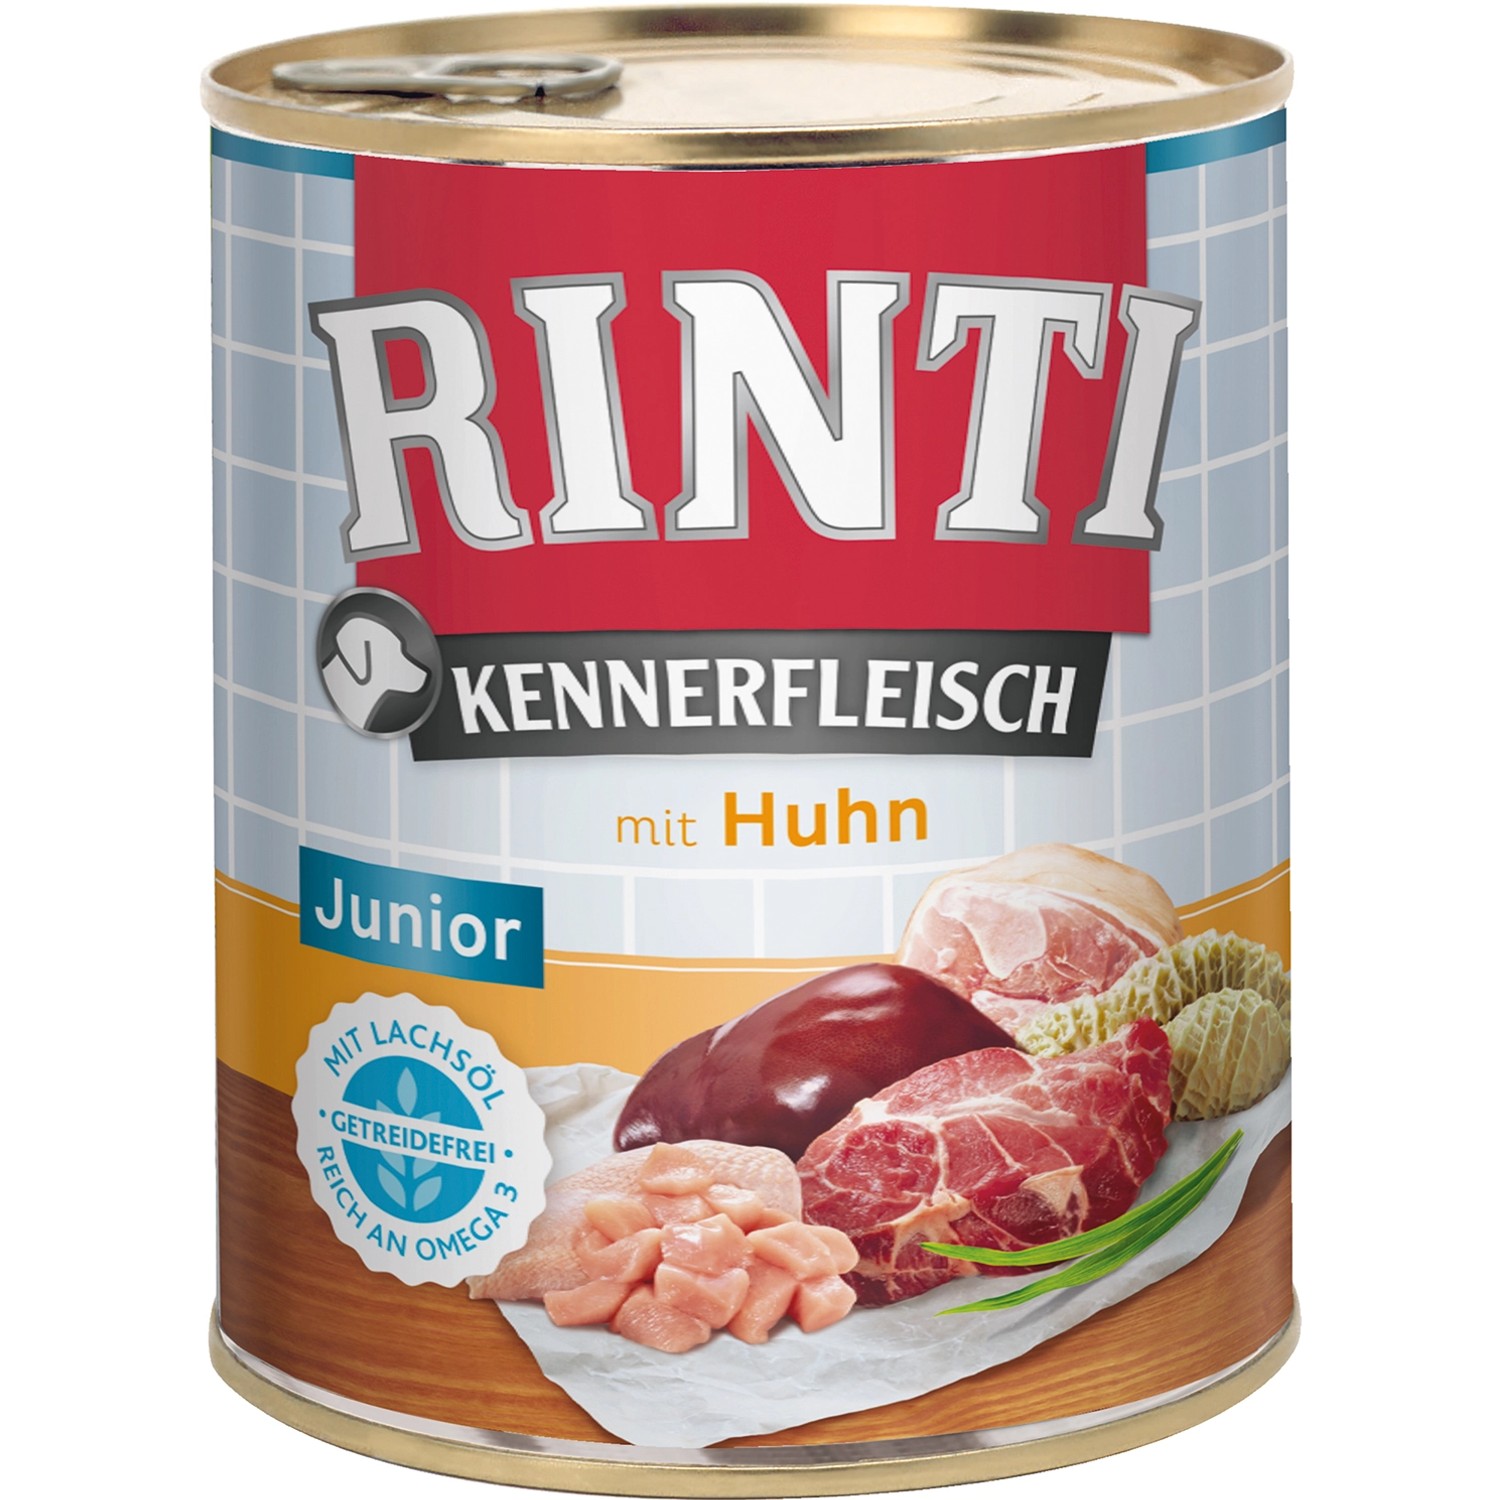 Rinti Hunde-Nassfutter Kennerfleisch Junior Huhn 800 g